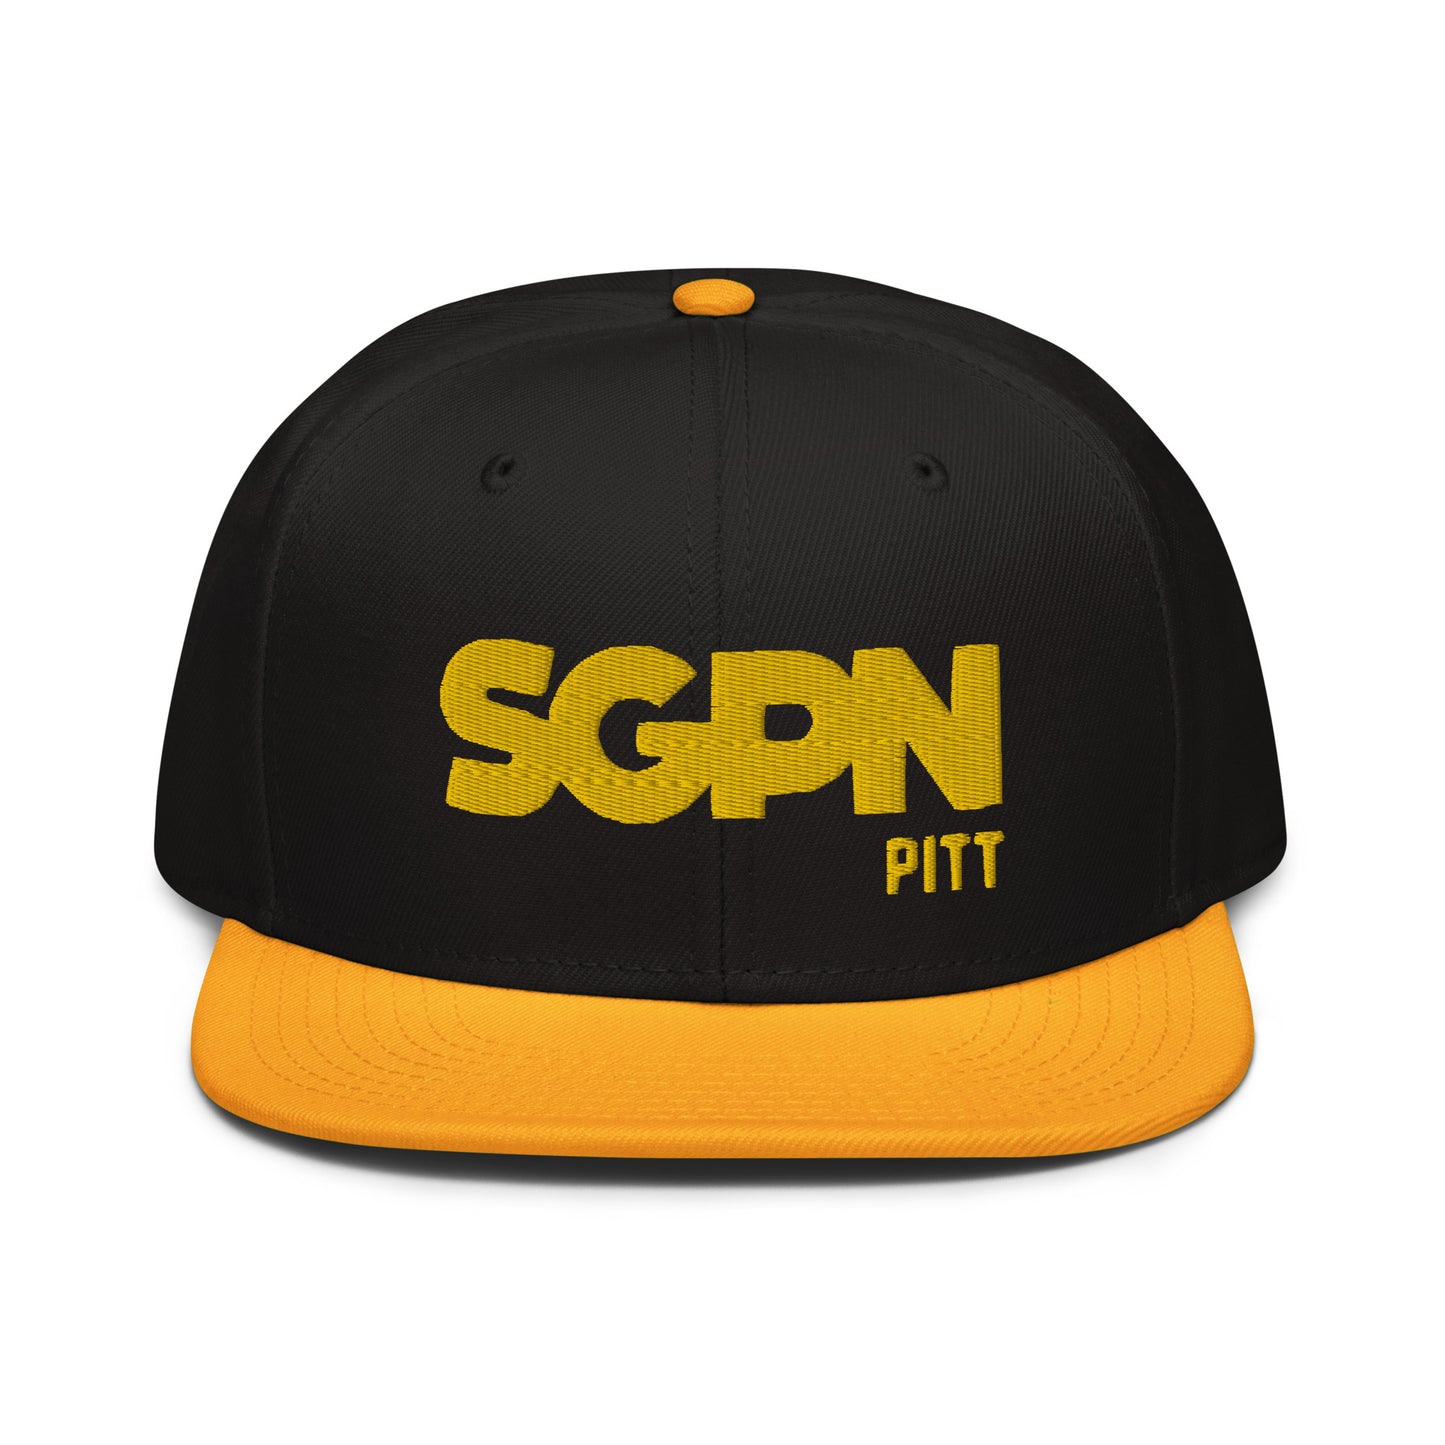 SGPN - Pitt edition - Snapback Hat